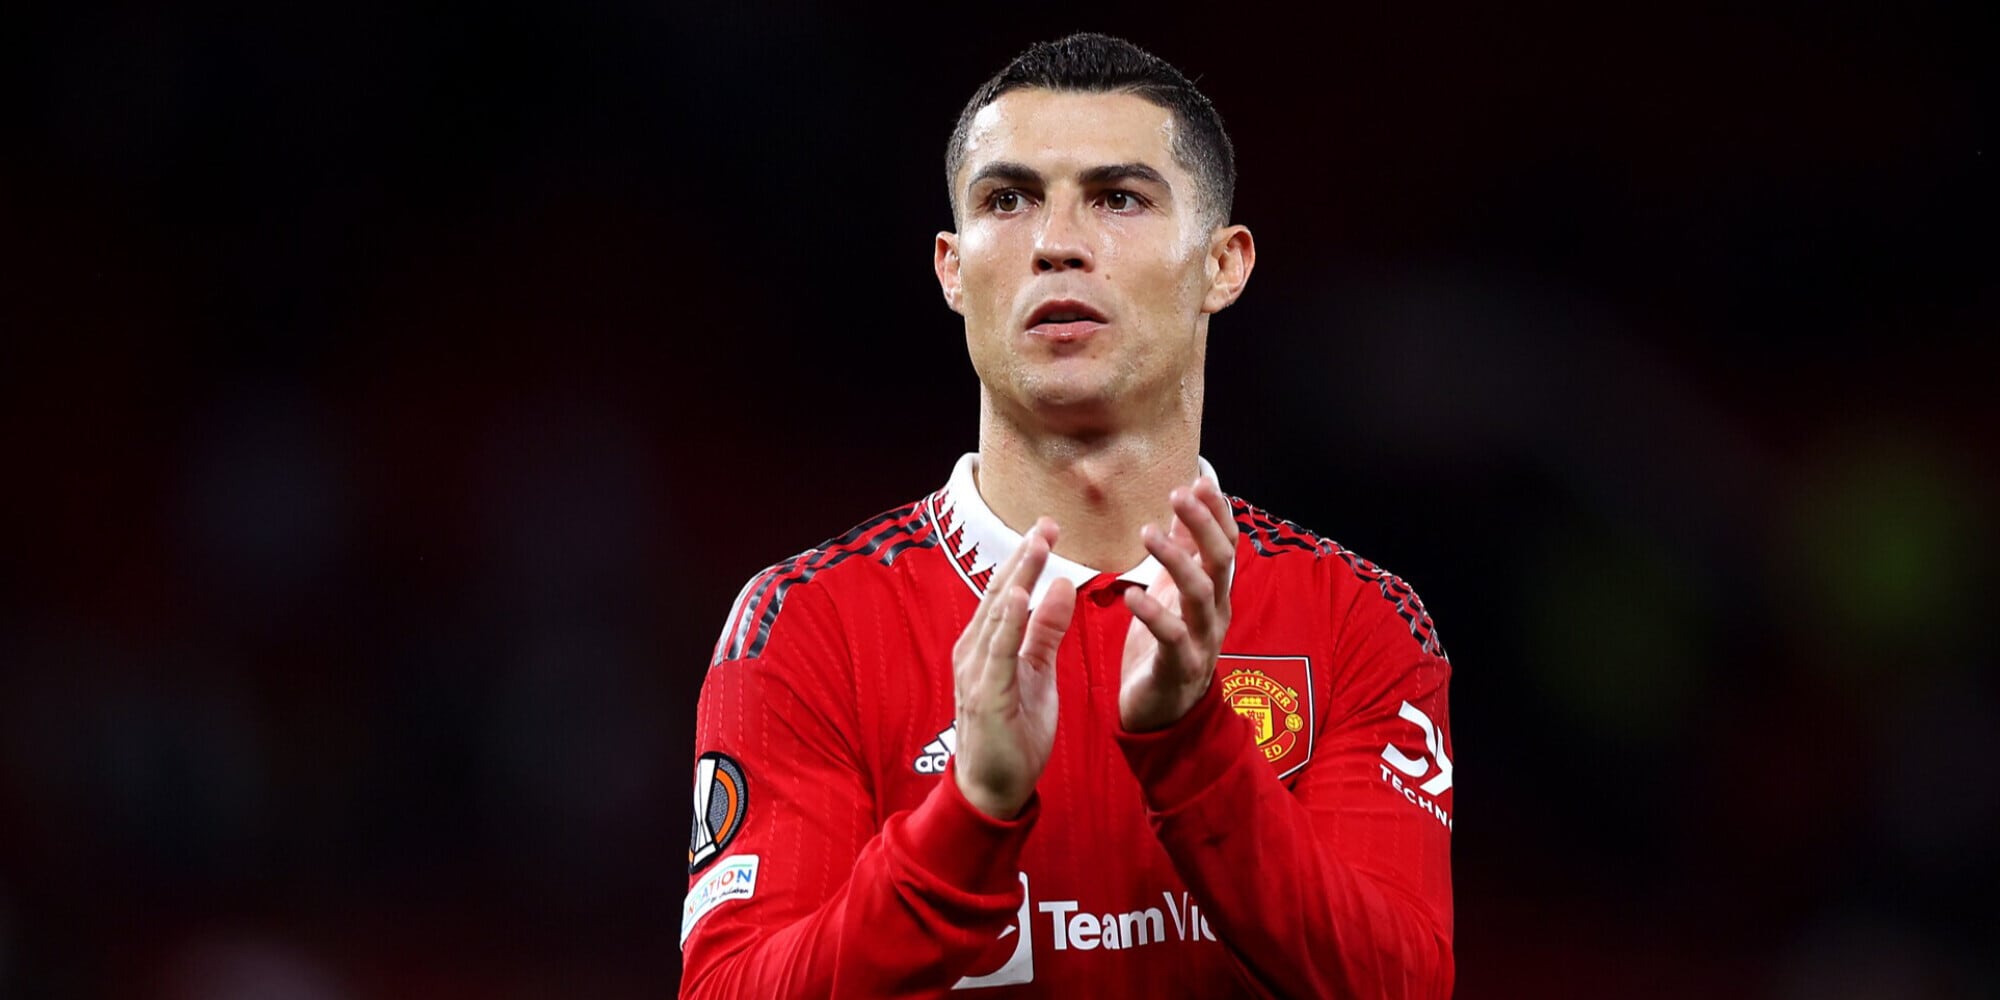 CdS – Cristiano Ronaldo lascia da subito il Manchester United: il comunicato ufficiale